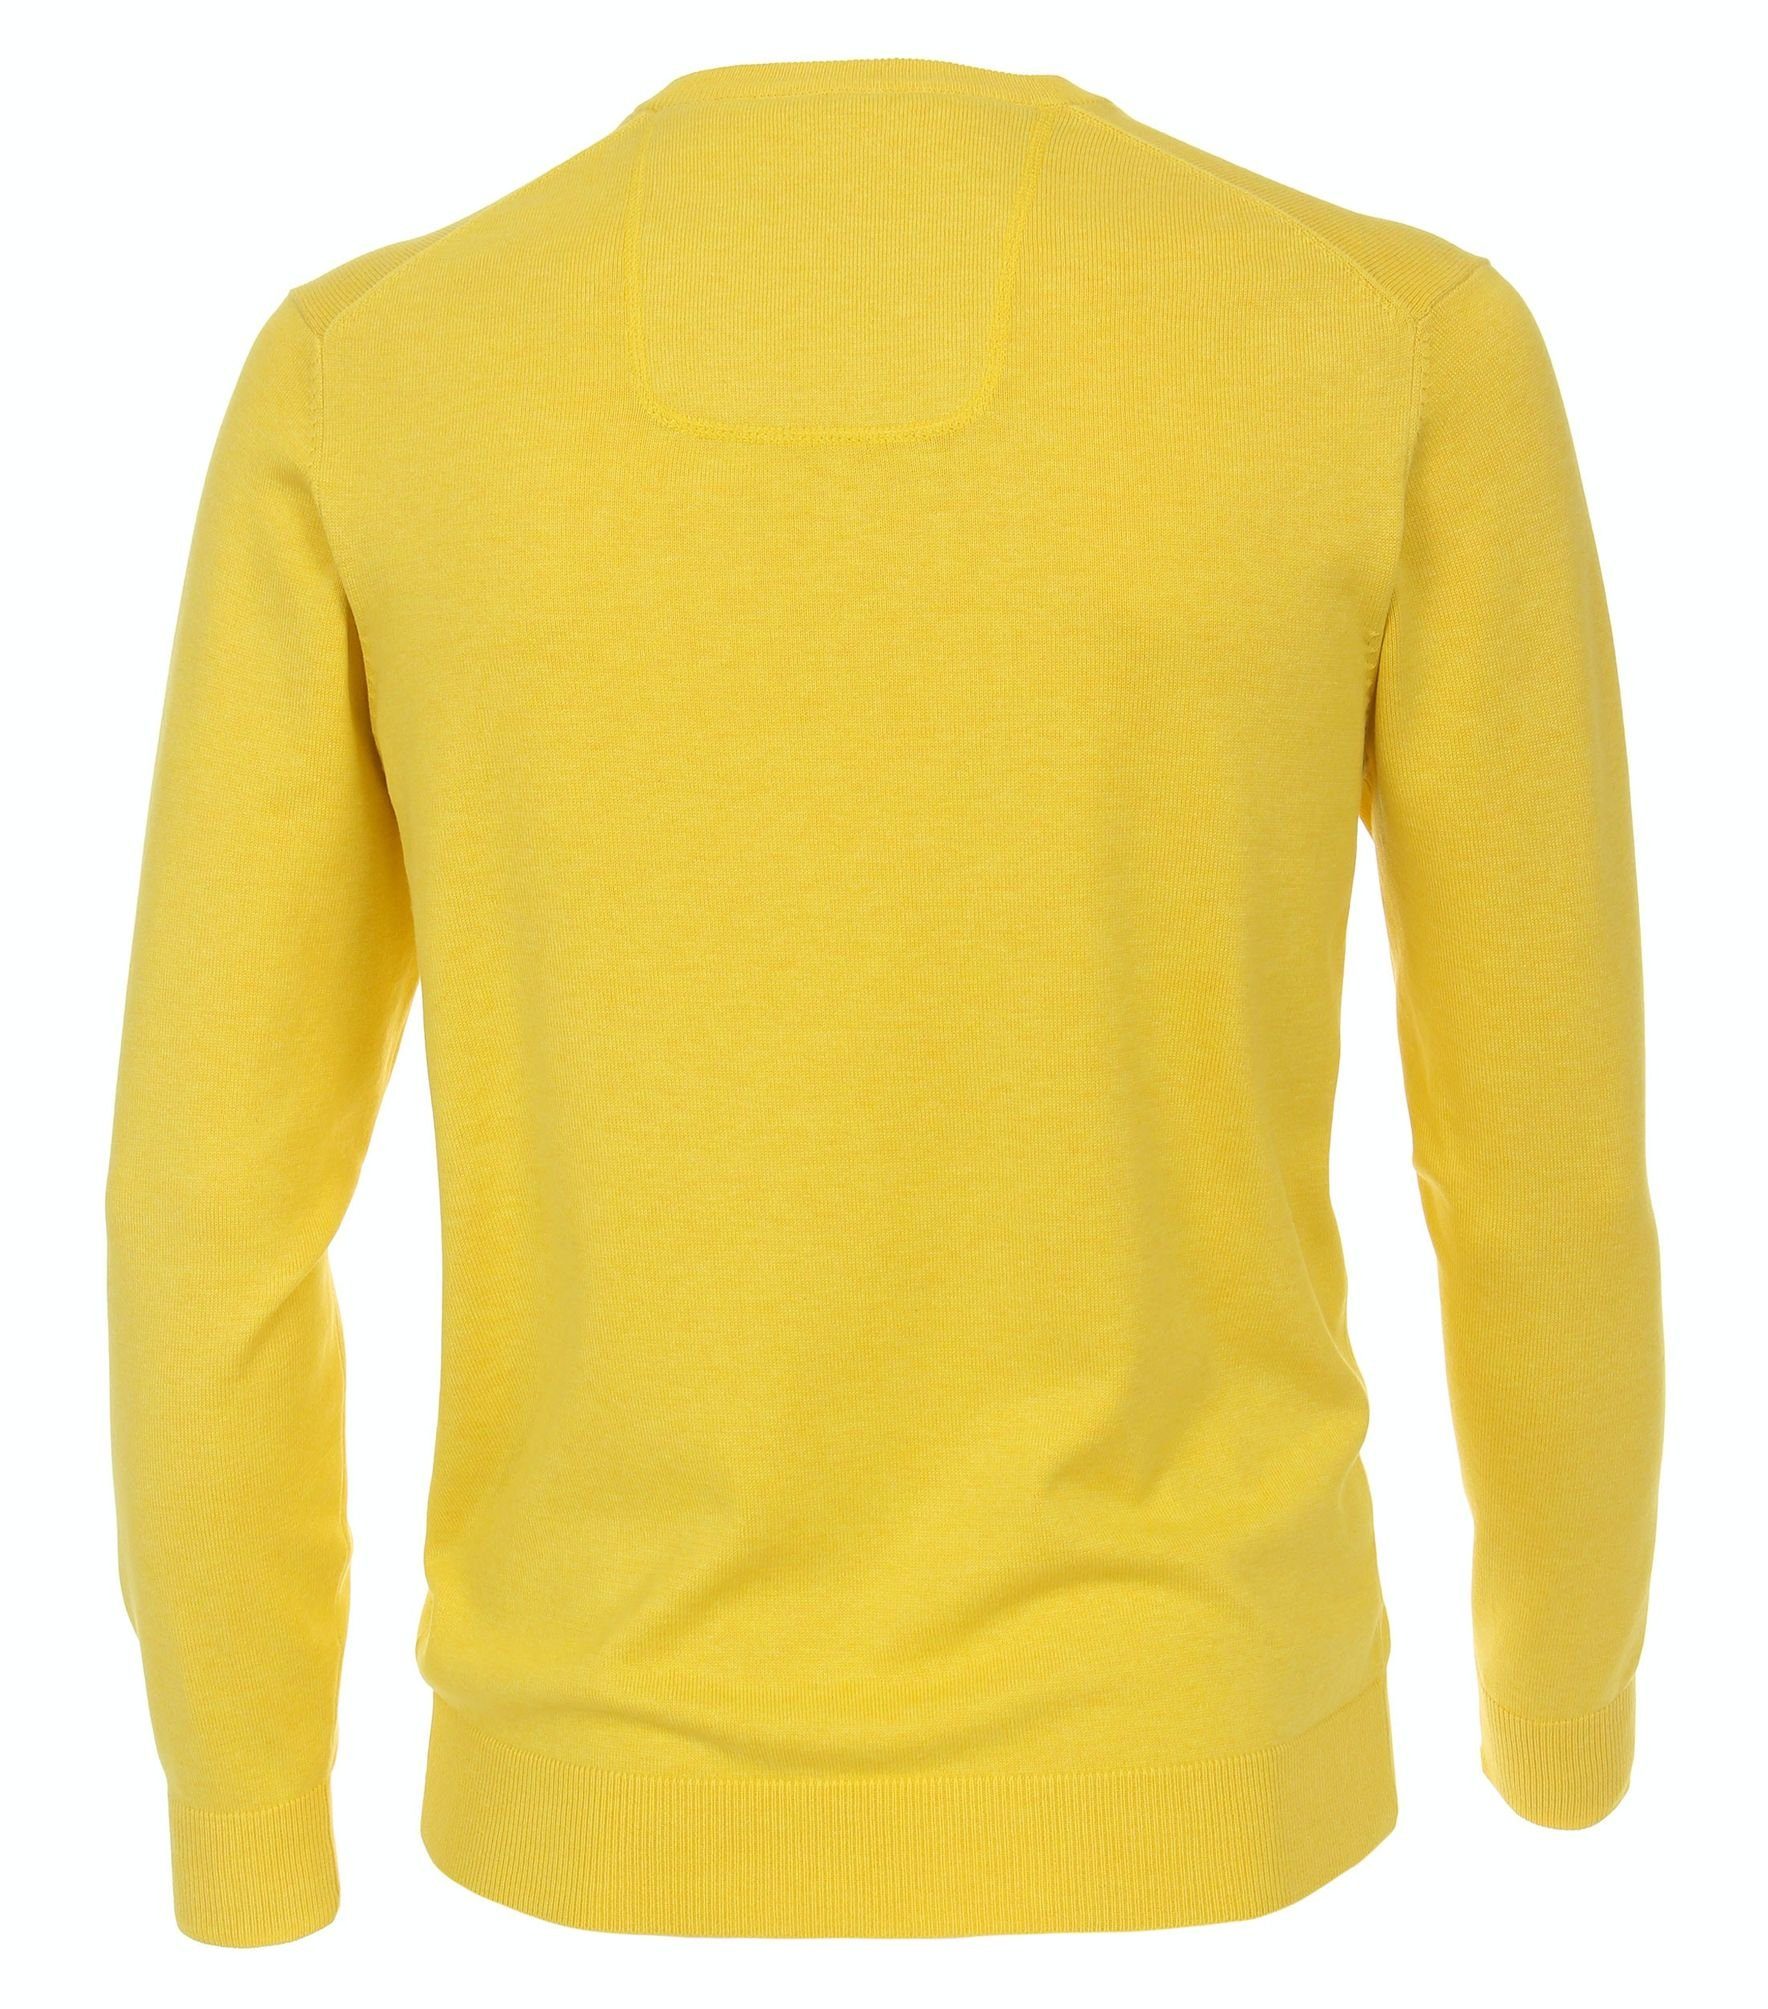 004430 (536) V-Ausschnitt-Pullover PIMA-Baumwolle gelb CASAMODA